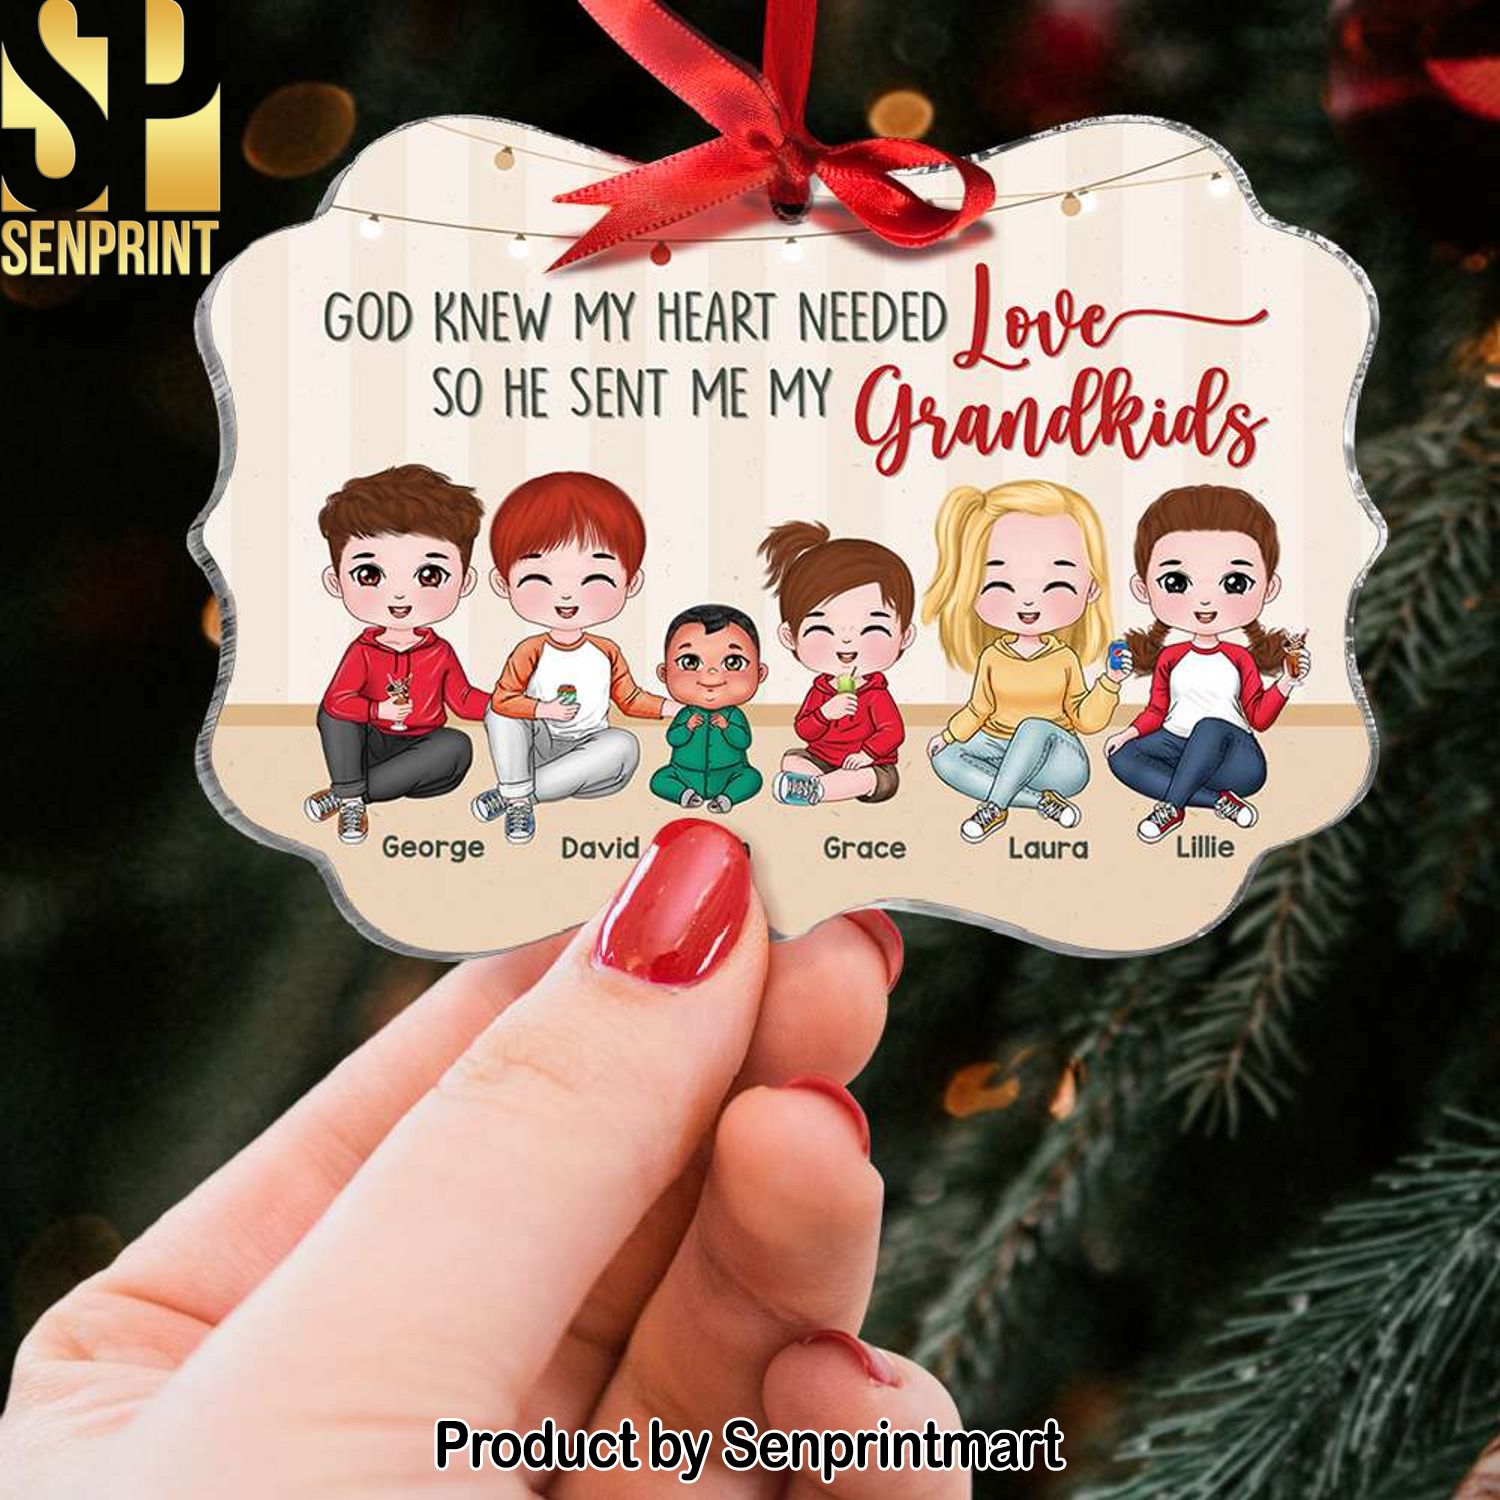 Grandma God Sent Me My Grandkids, Medallion Acrylic Ornament, Lovely Christmas Little Love Grandkids, Gift For Grandparents